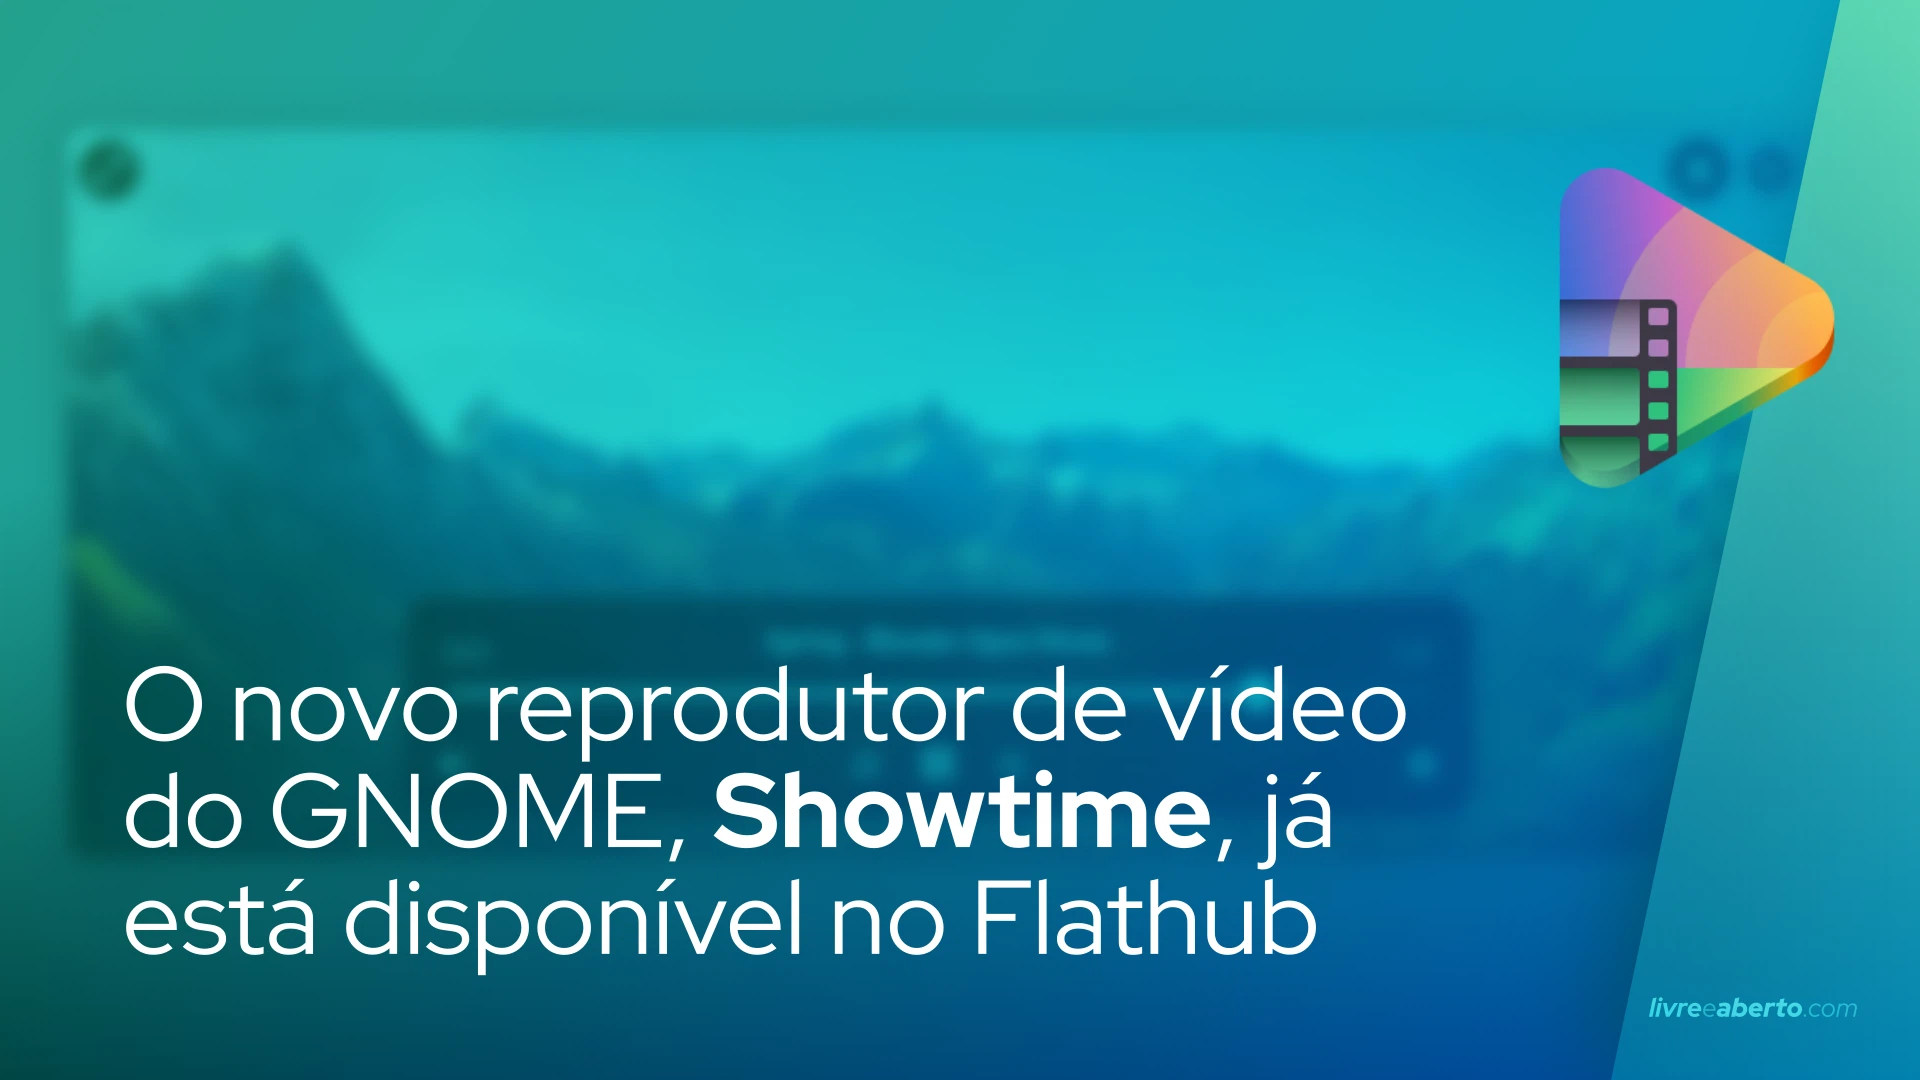 O novo reprodutor de vídeo do GNOME, Showtime, já está disponível no Flathub